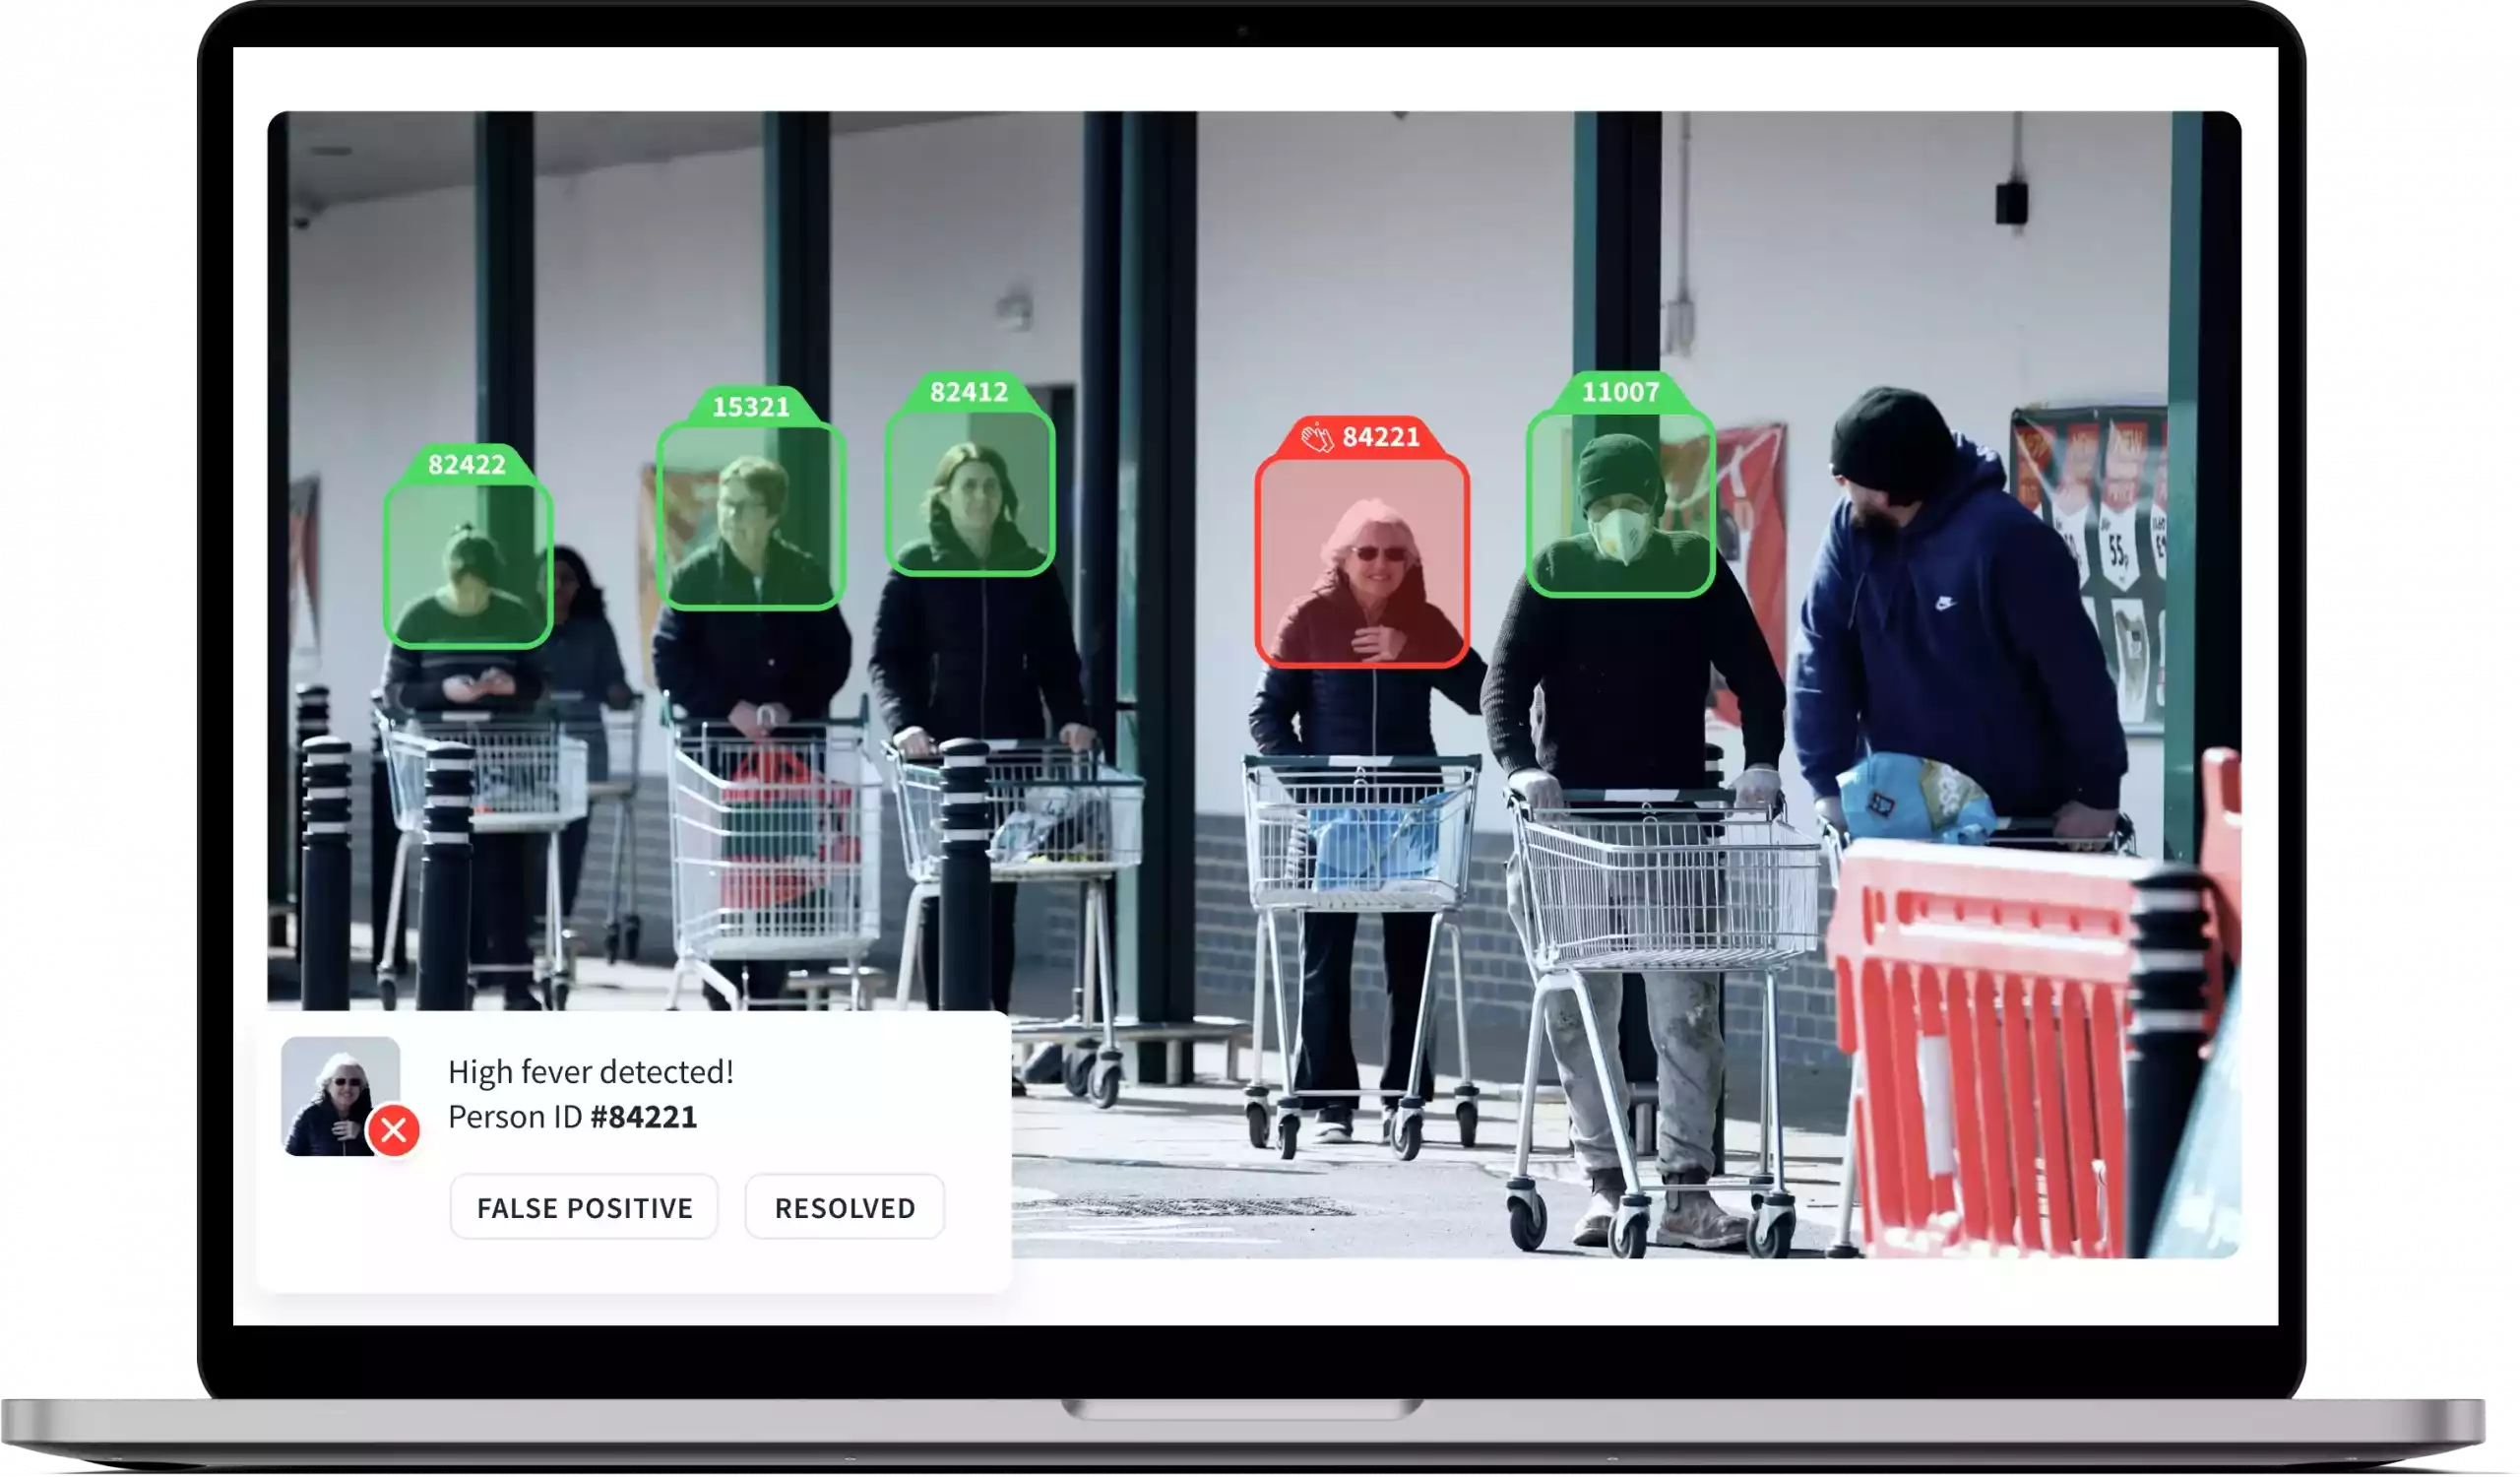 AI driven platform to analyze shopper behavior, image #5